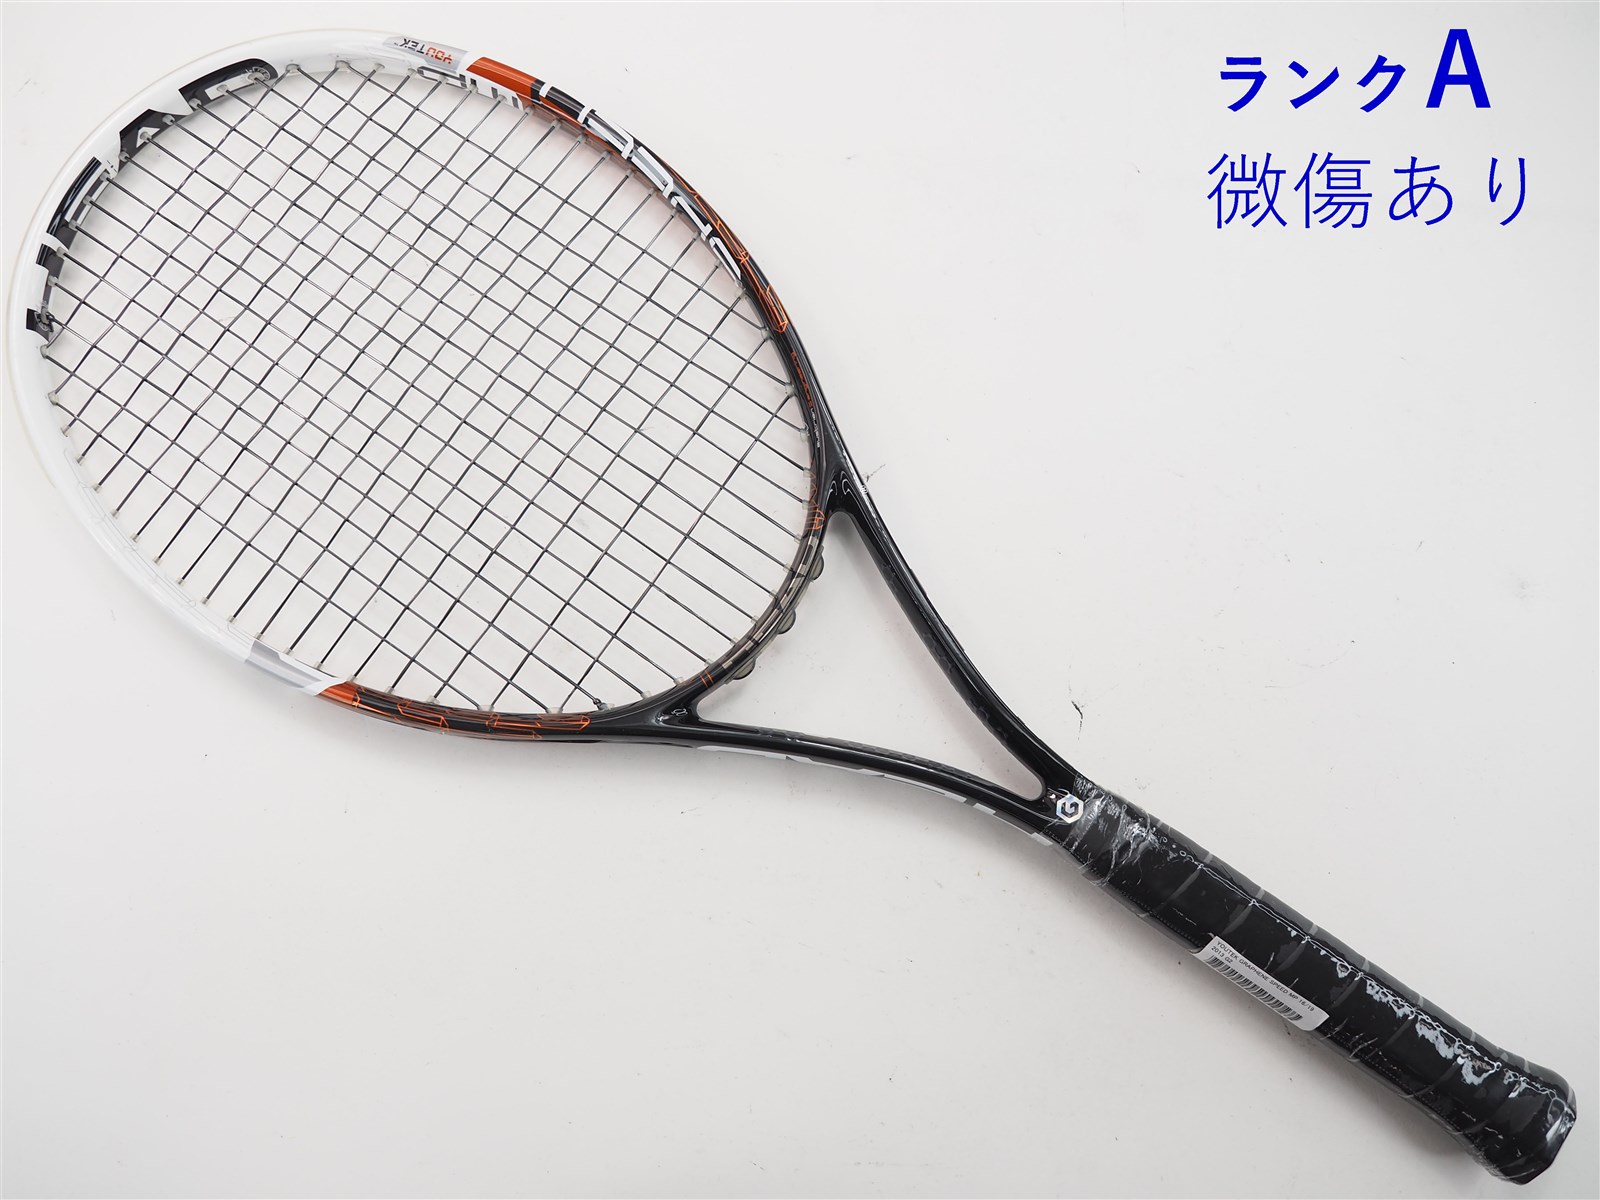 テニスラケット ヘッド ユーテック グラフィン スピード MP 16/19 2013年モデル (G2)HEAD YOUTEK GRAPHENE SPEED MP 16/19 2013270インチフレーム厚